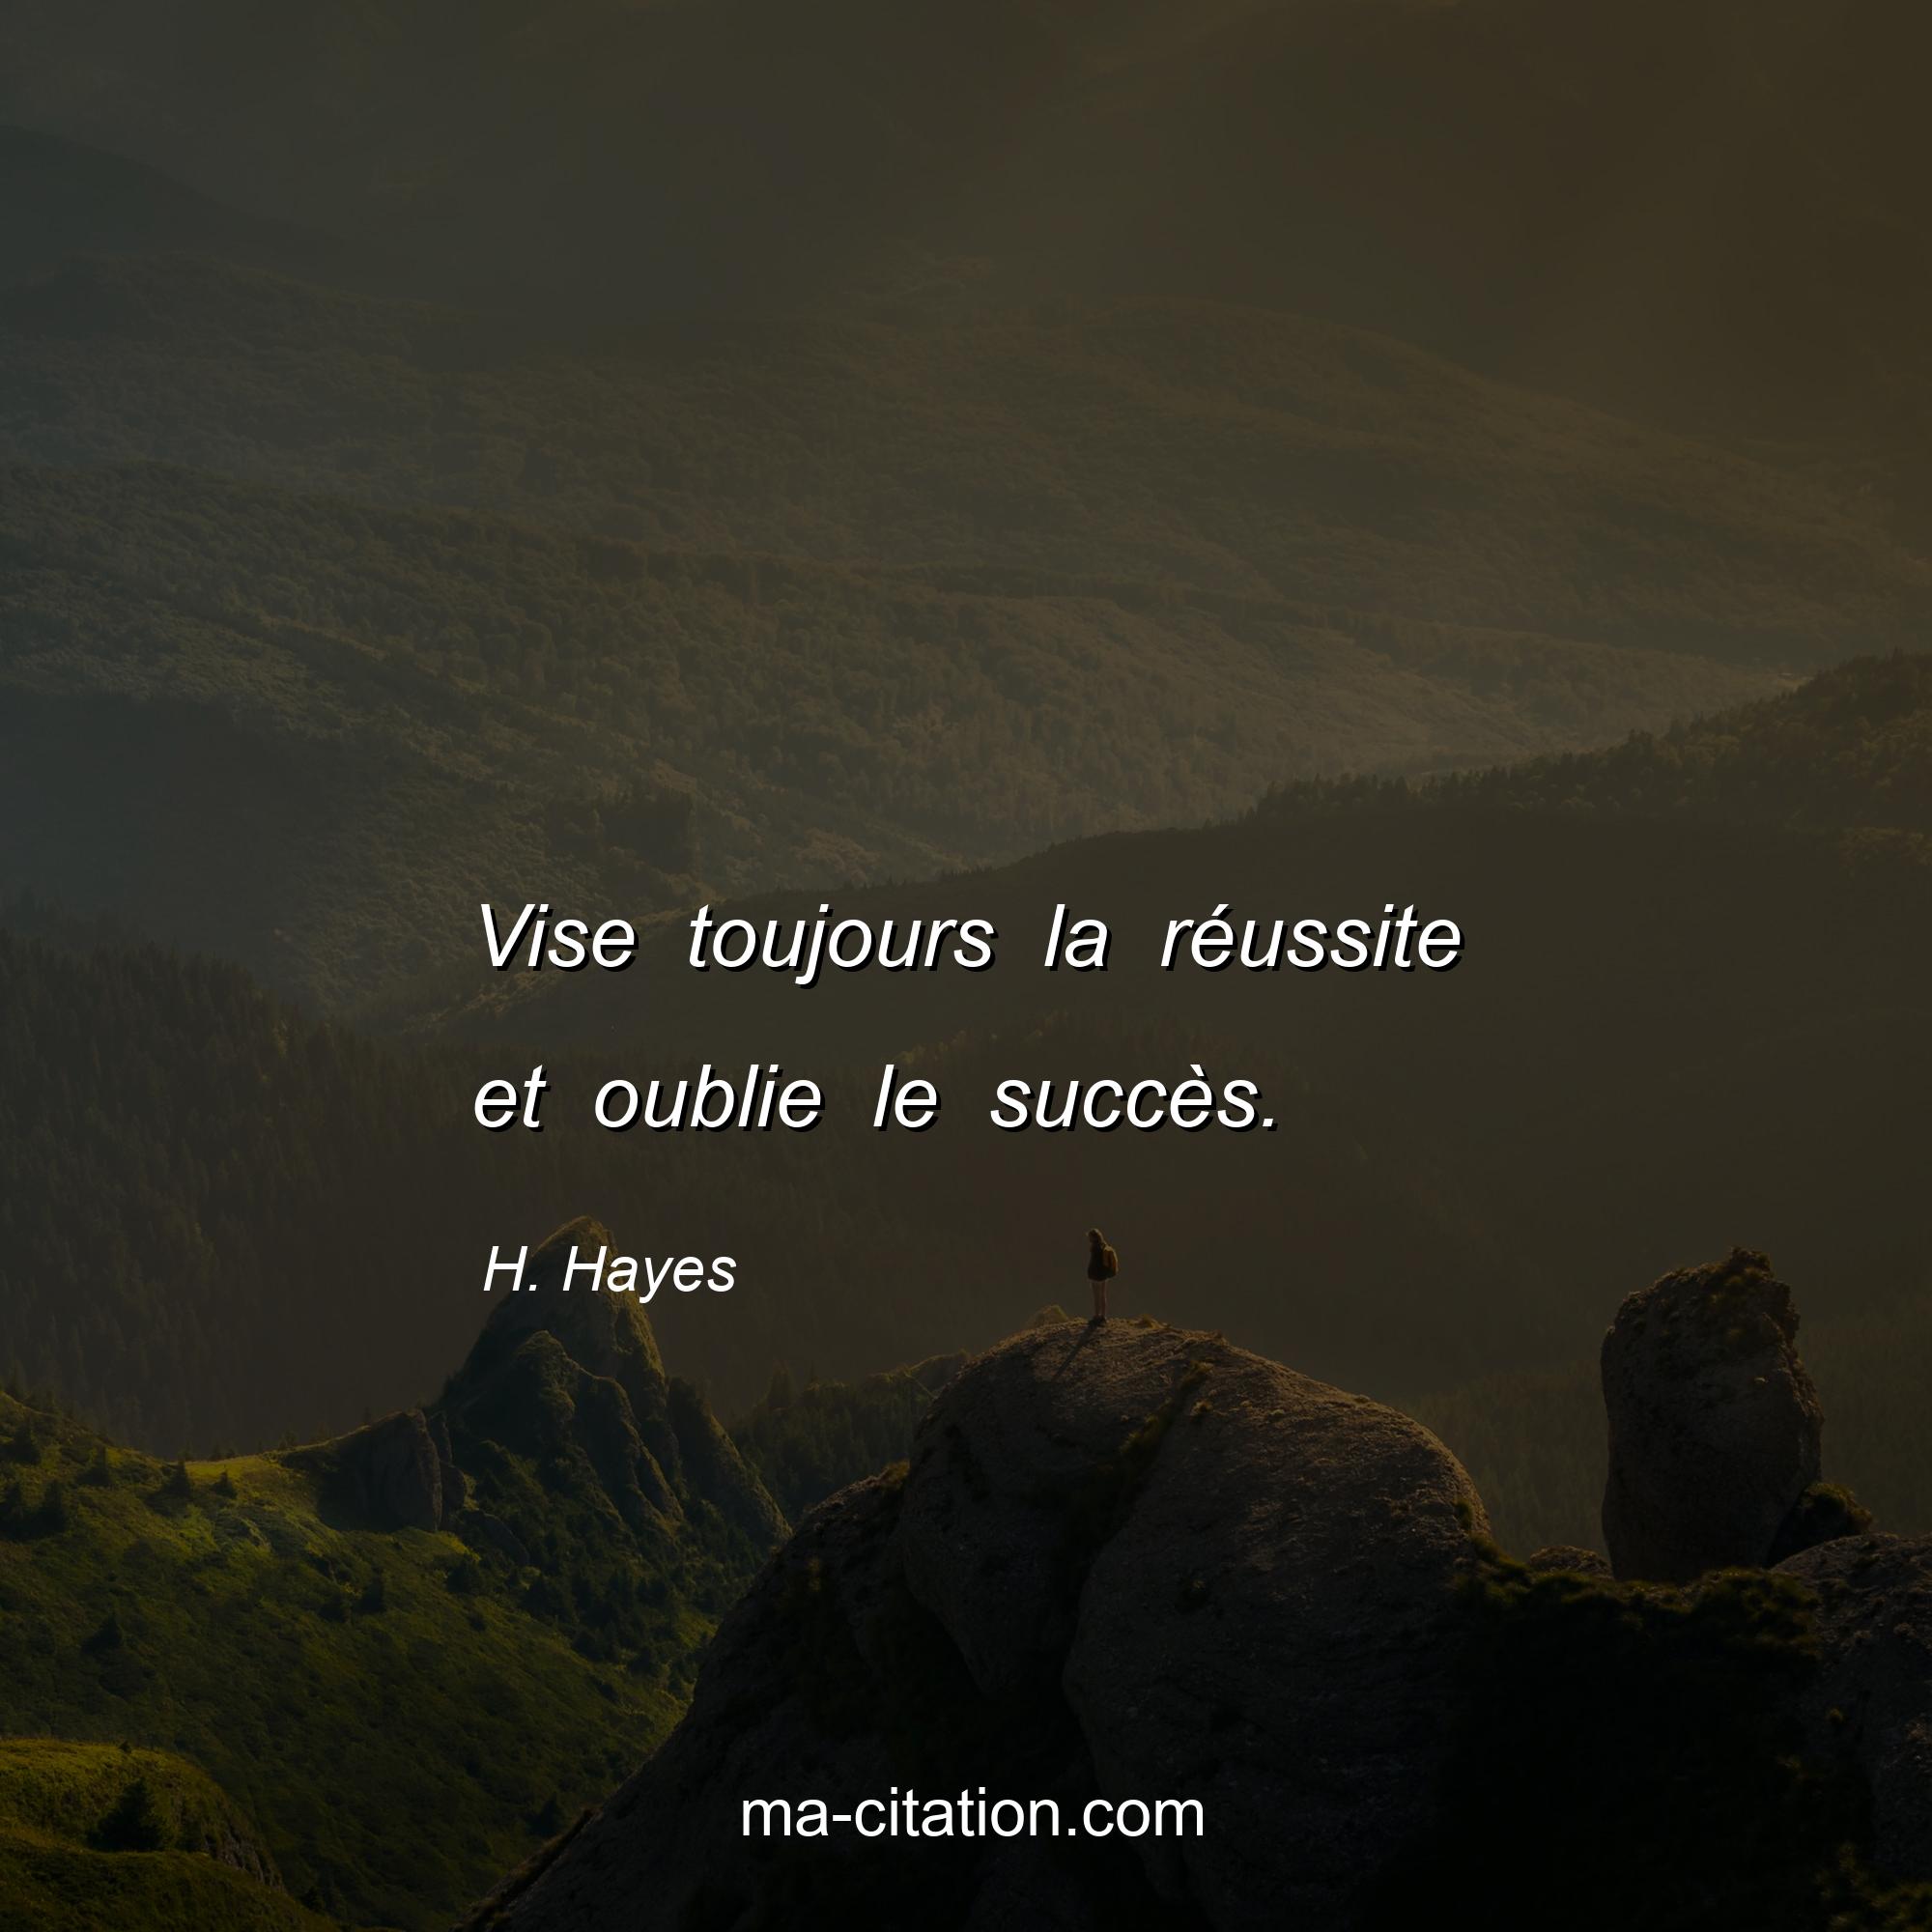 H. Hayes : Vise toujours la réussite et oublie le succès.